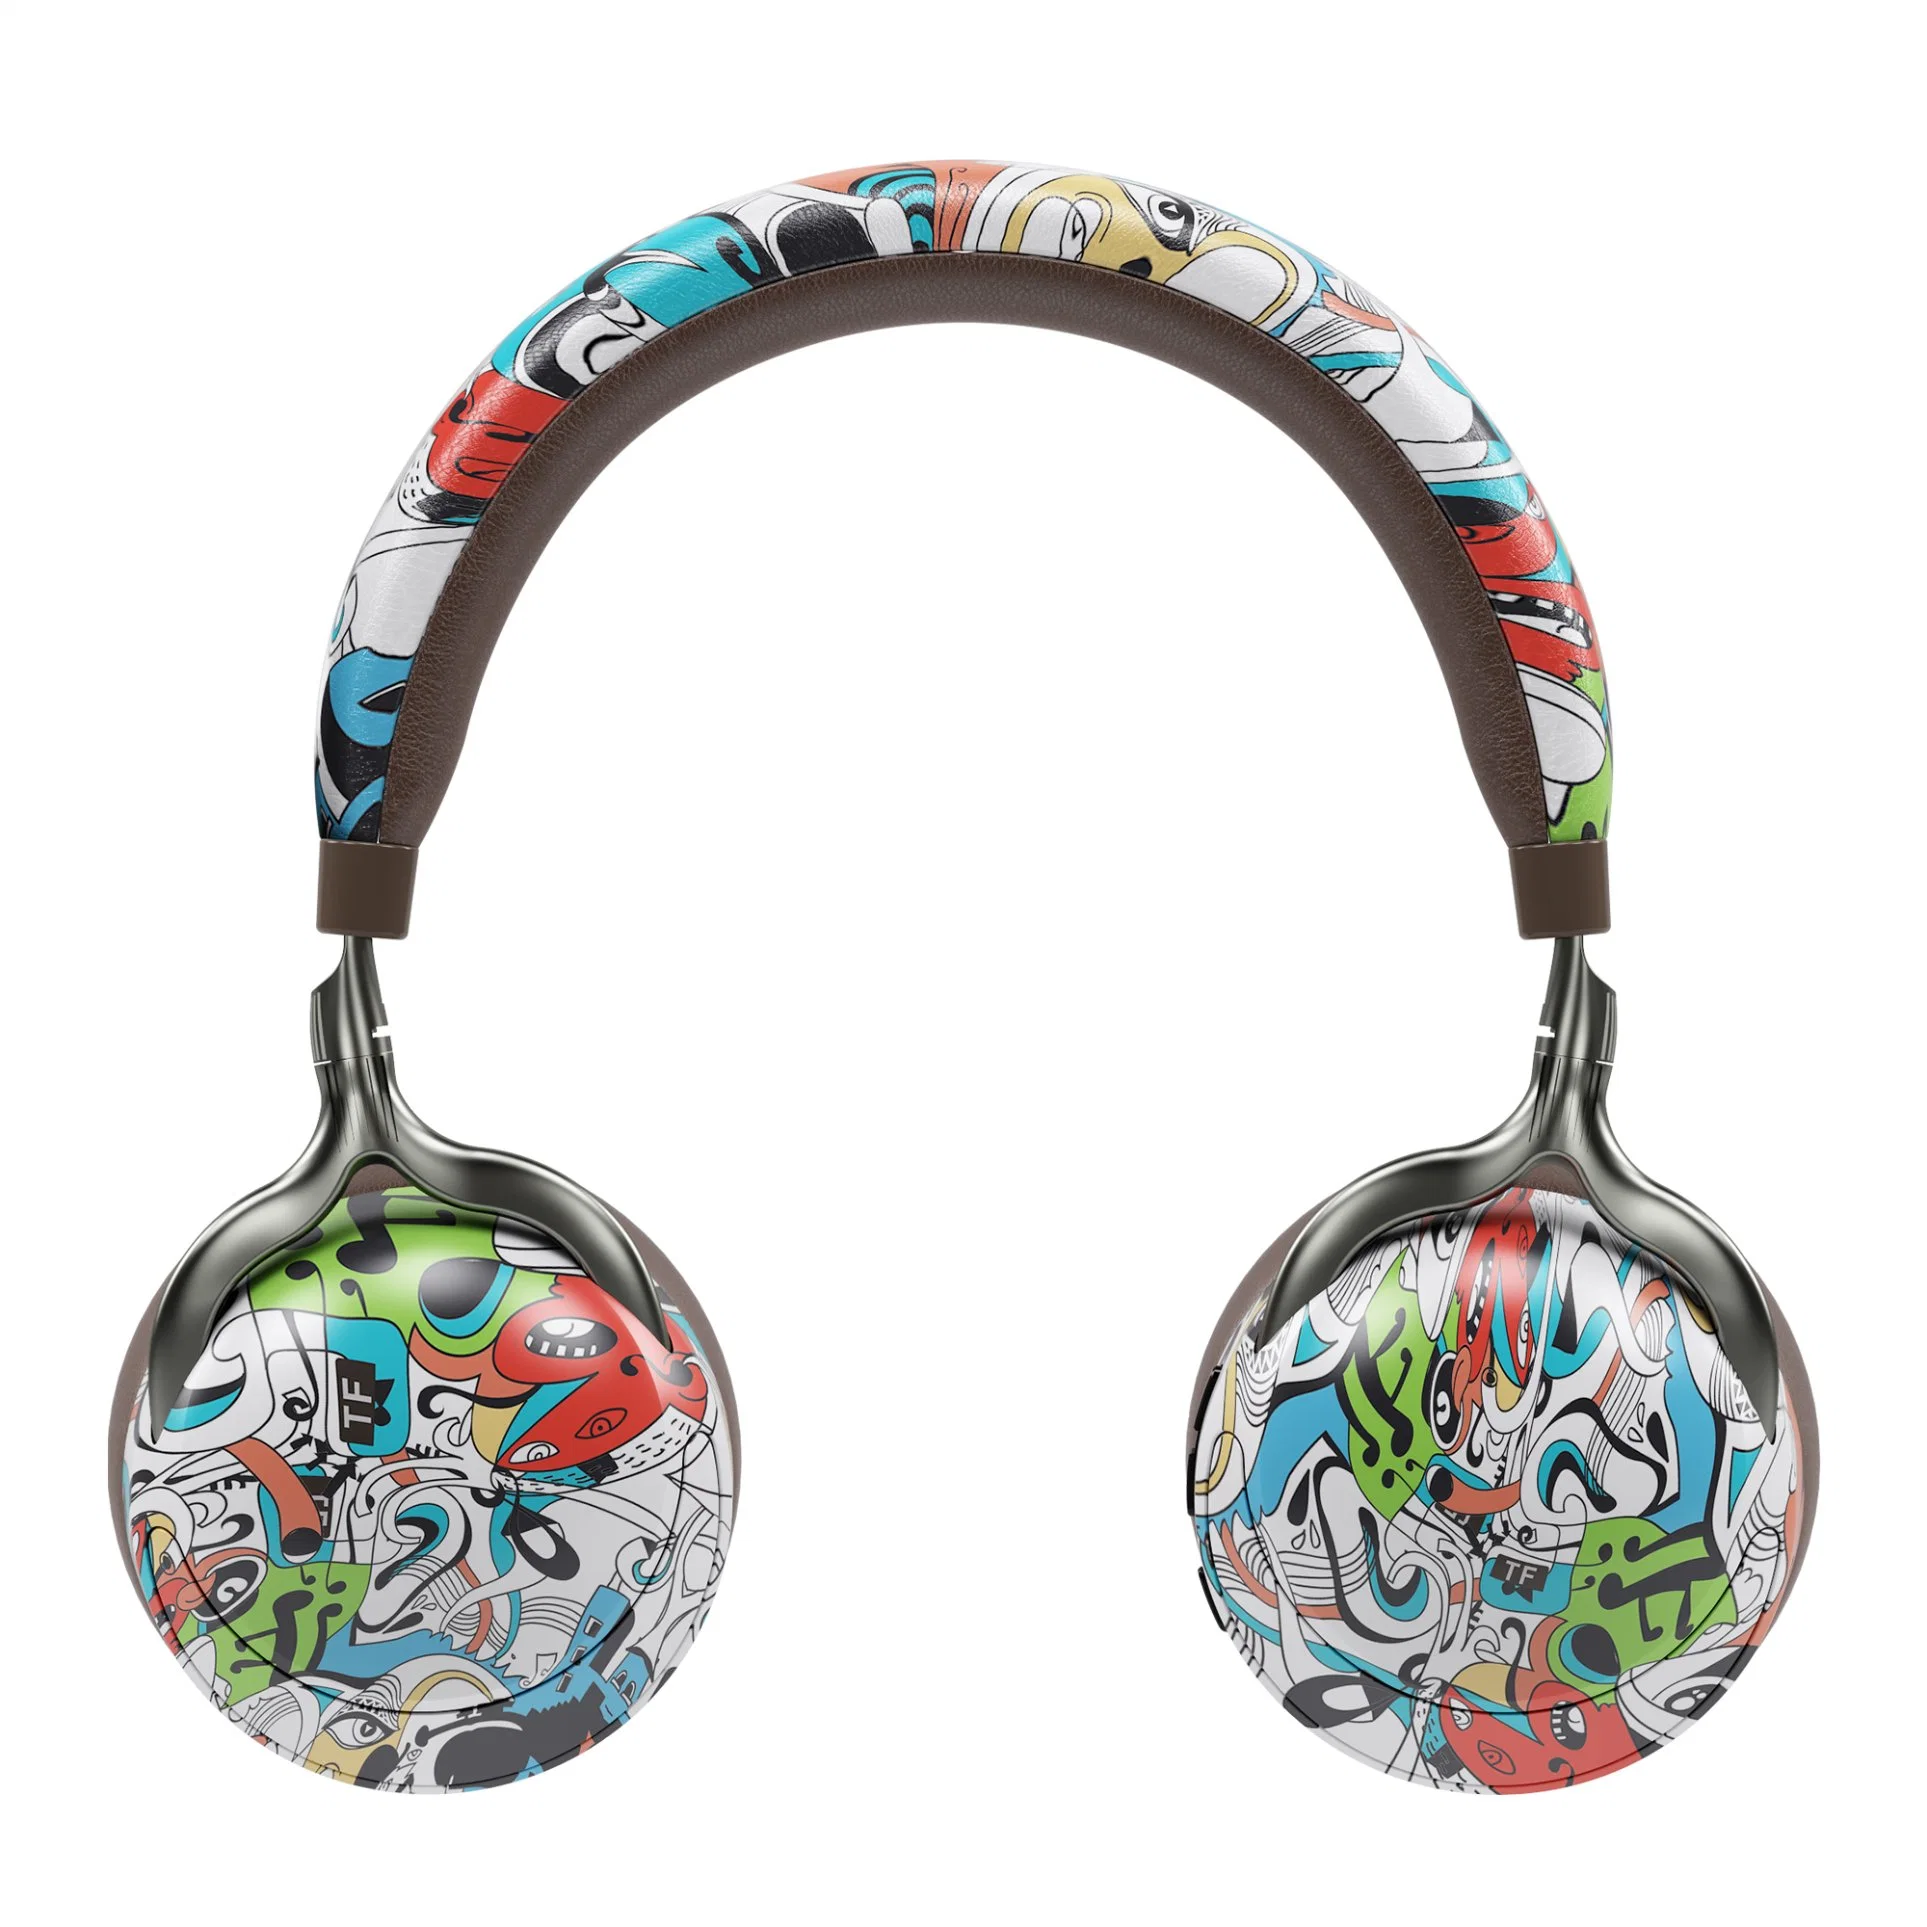 الموضة سماعات رأس بلوتوث اللاسلكية رسم جرافيتي طباعة الكمبيوتر لعبة المحمول سماعة الرأس